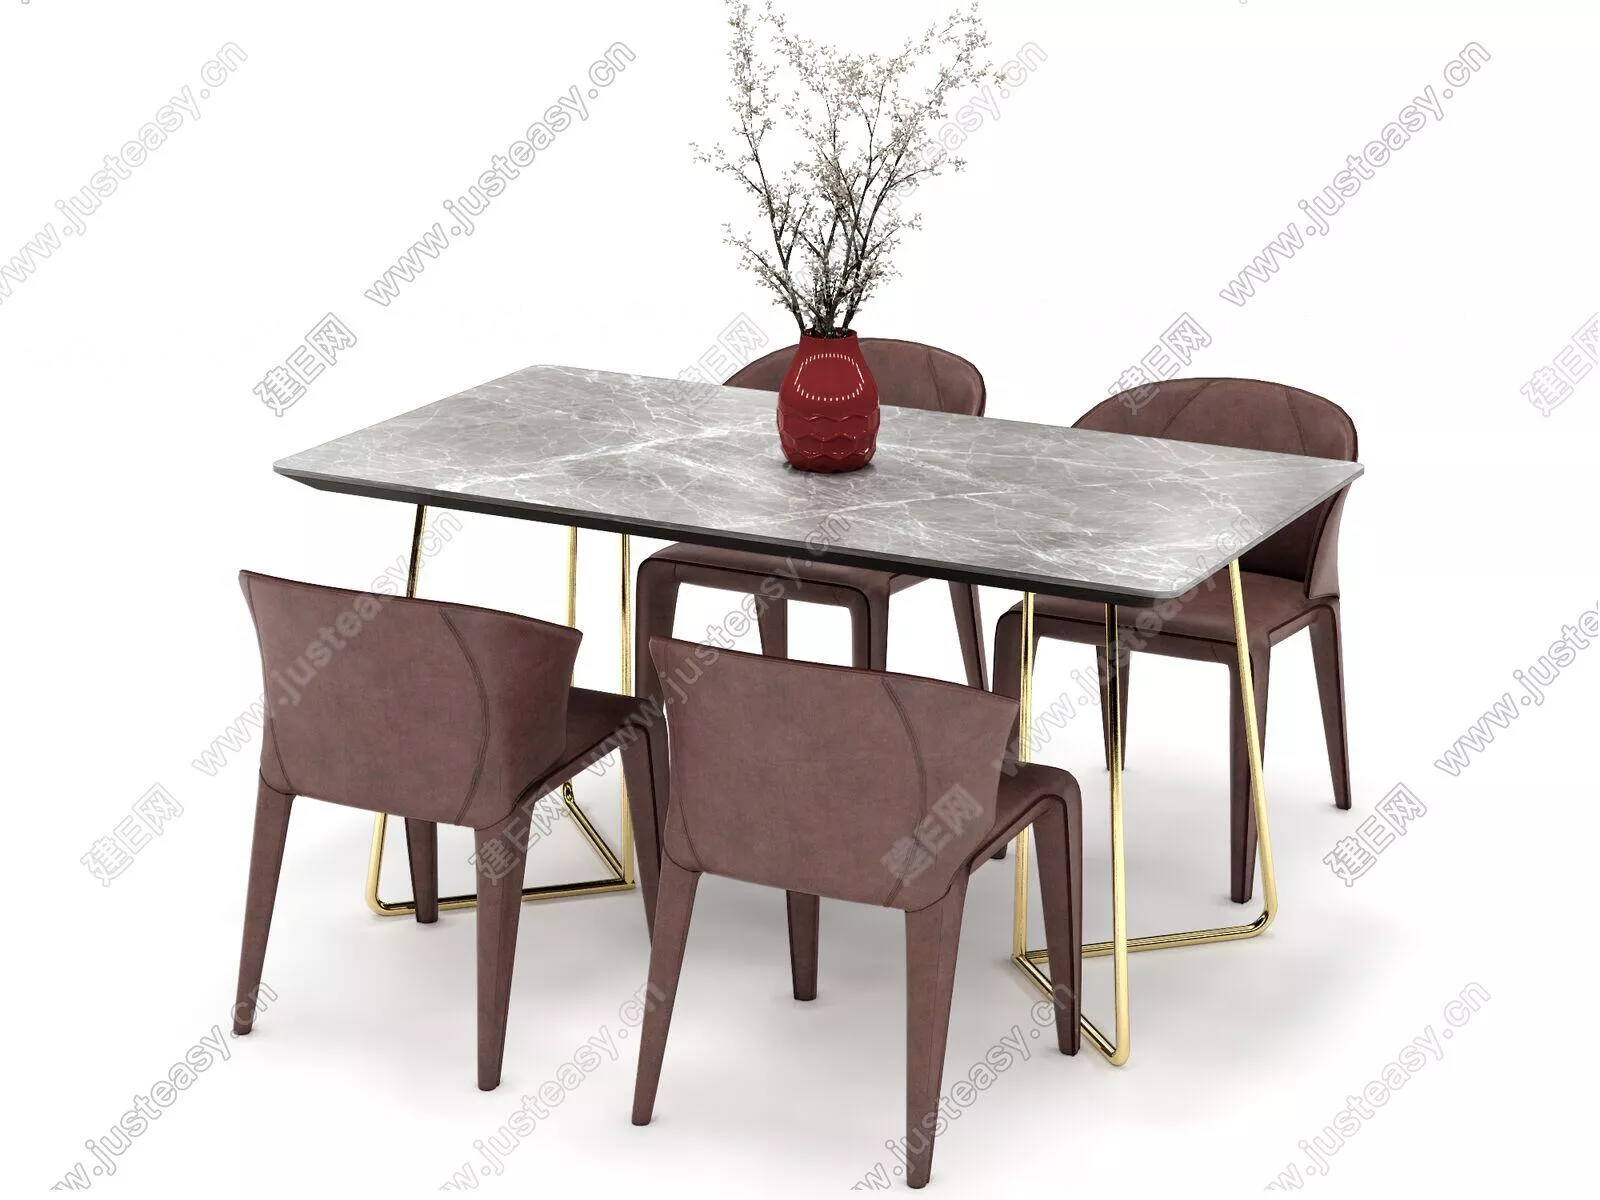 MODERN DINING TABLE SET - SKETCHUP 3D MODEL - ENSCAPE - 117327319